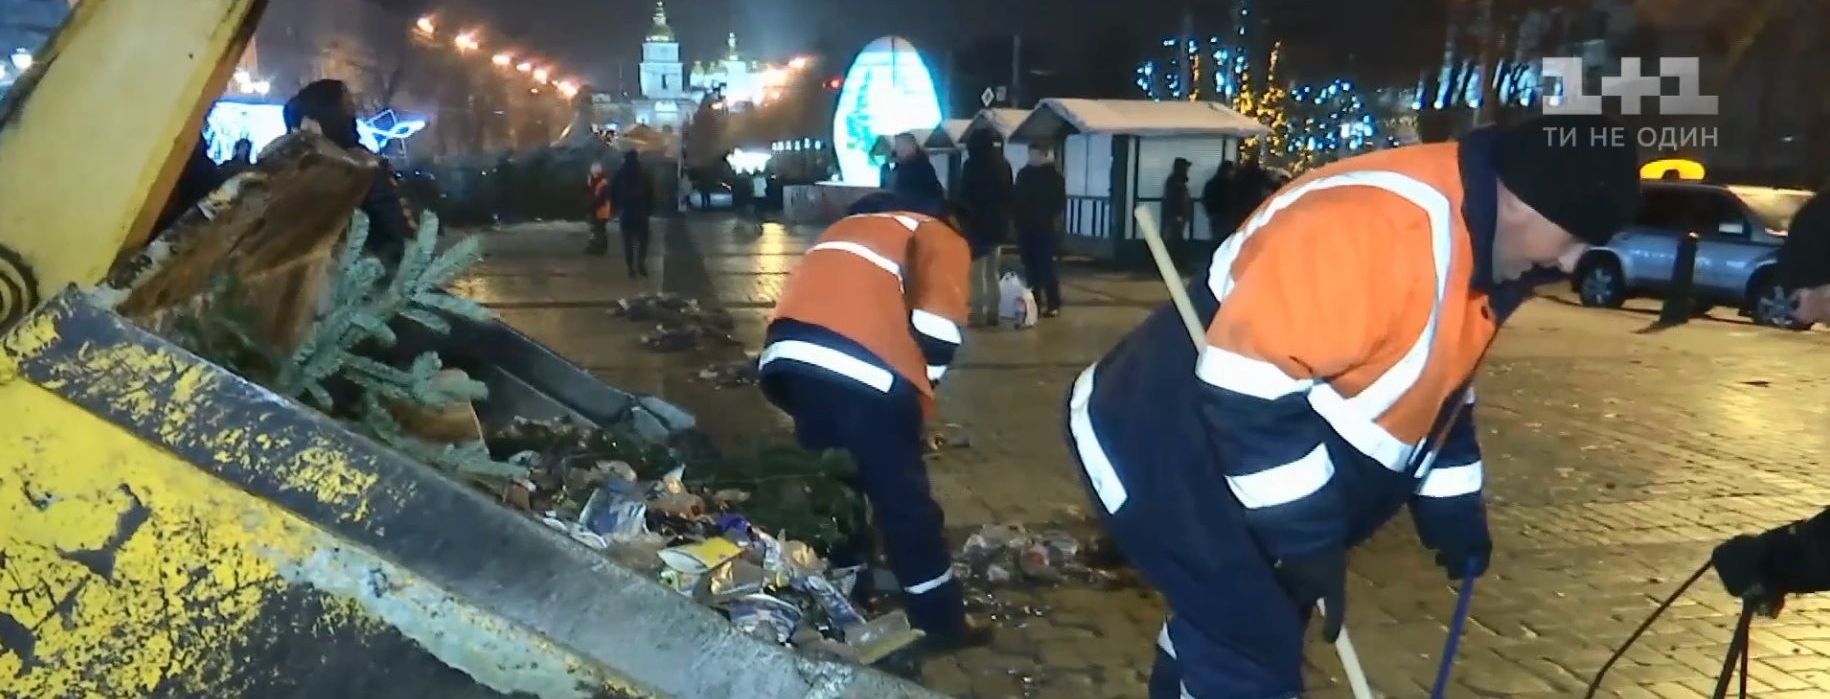 После новогодней ночи из центра Киева выгребли более 100 тонн мусора